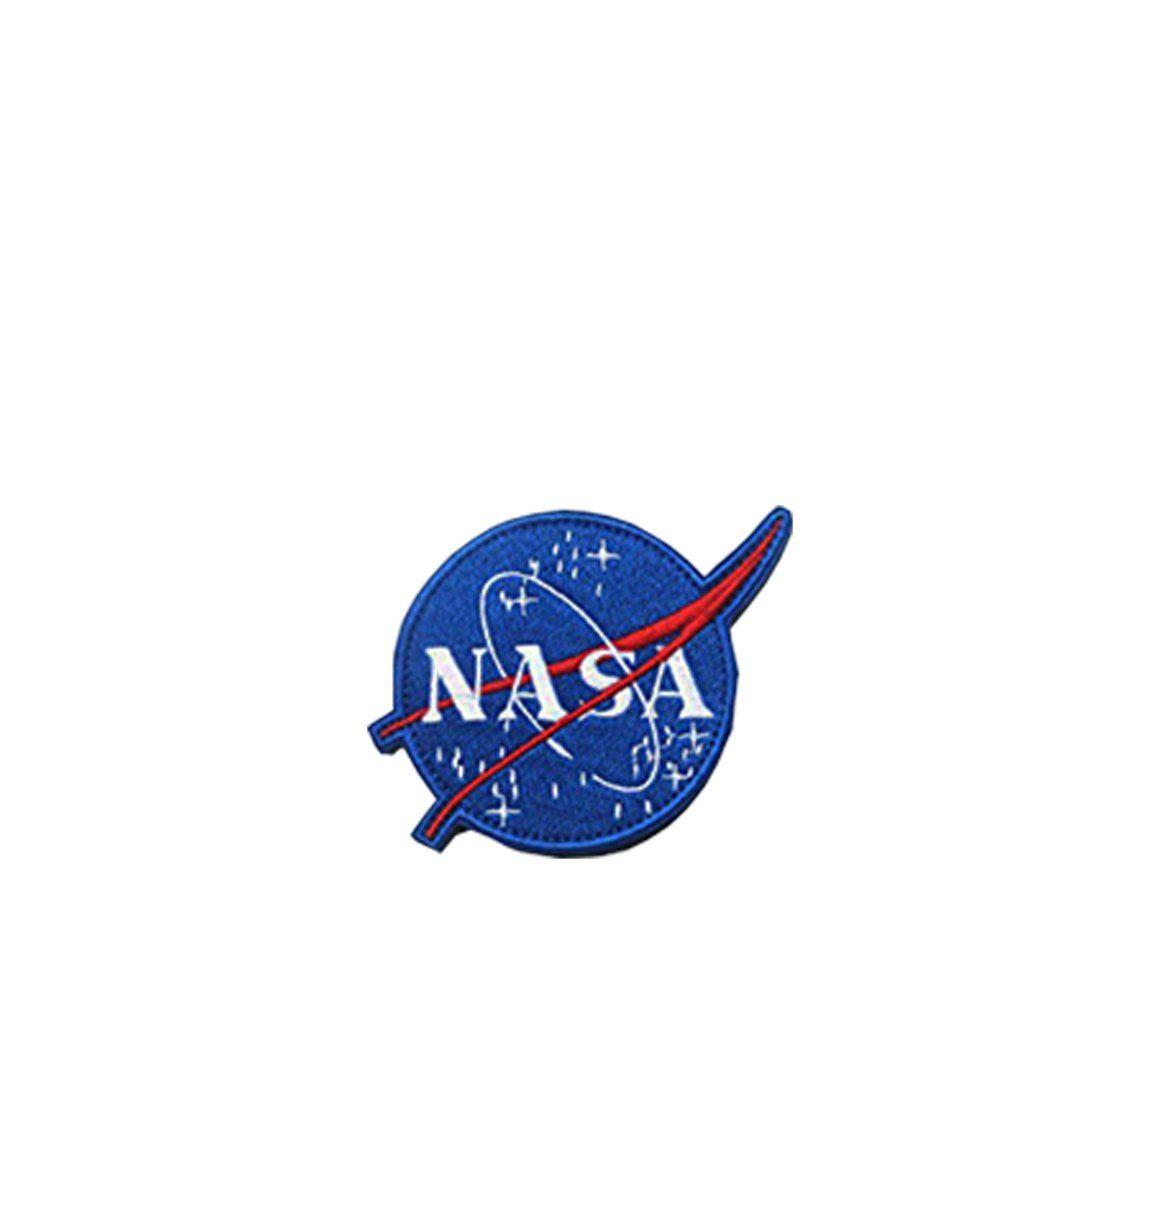 NASA Ball Logo - PATCH - NASA APOLLO 11 - STAR CADET